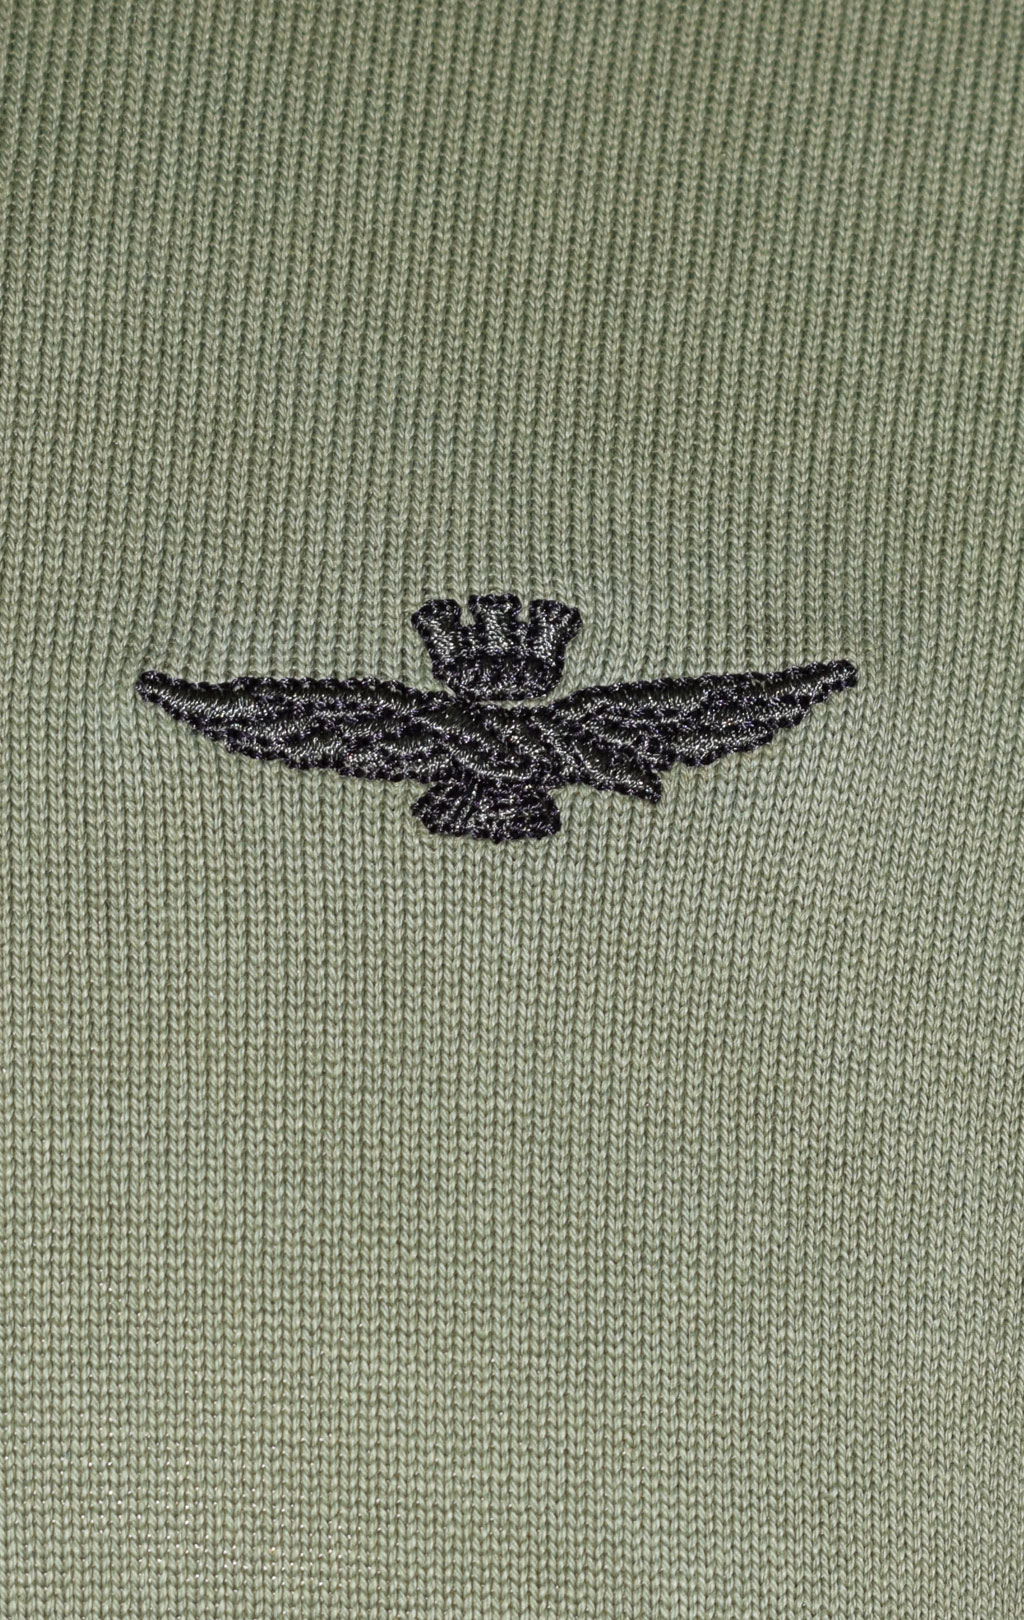 Свитер AERONAUTICA MILITARE SS 23/IN verde militare (MA 1424) 